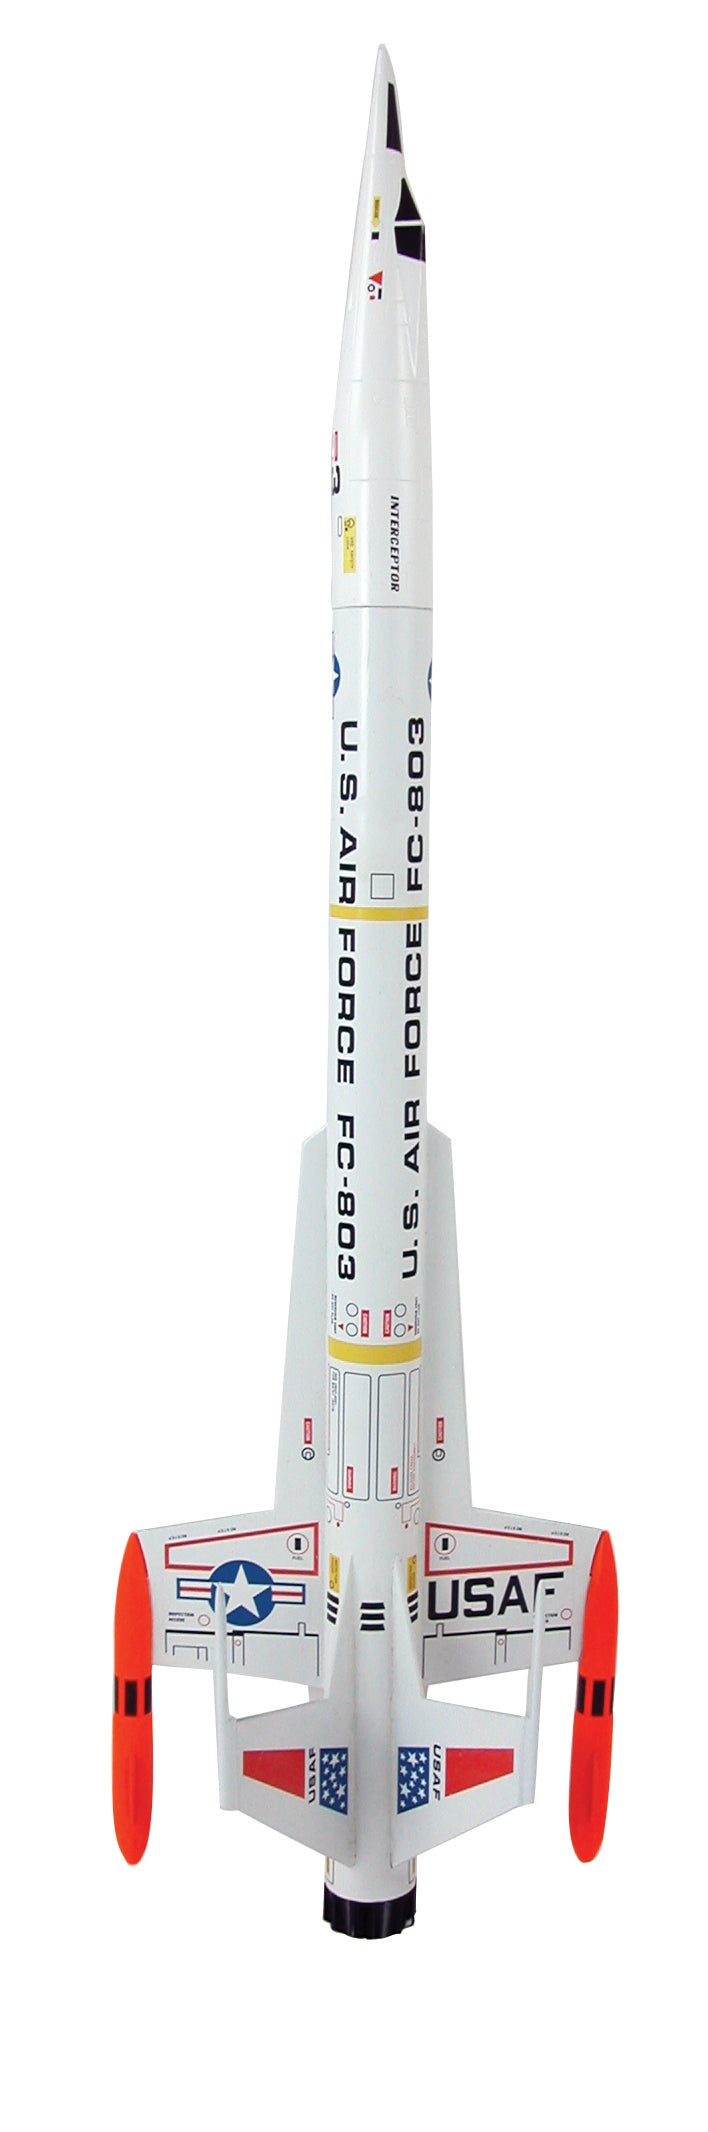 Estes Rockets EST1250